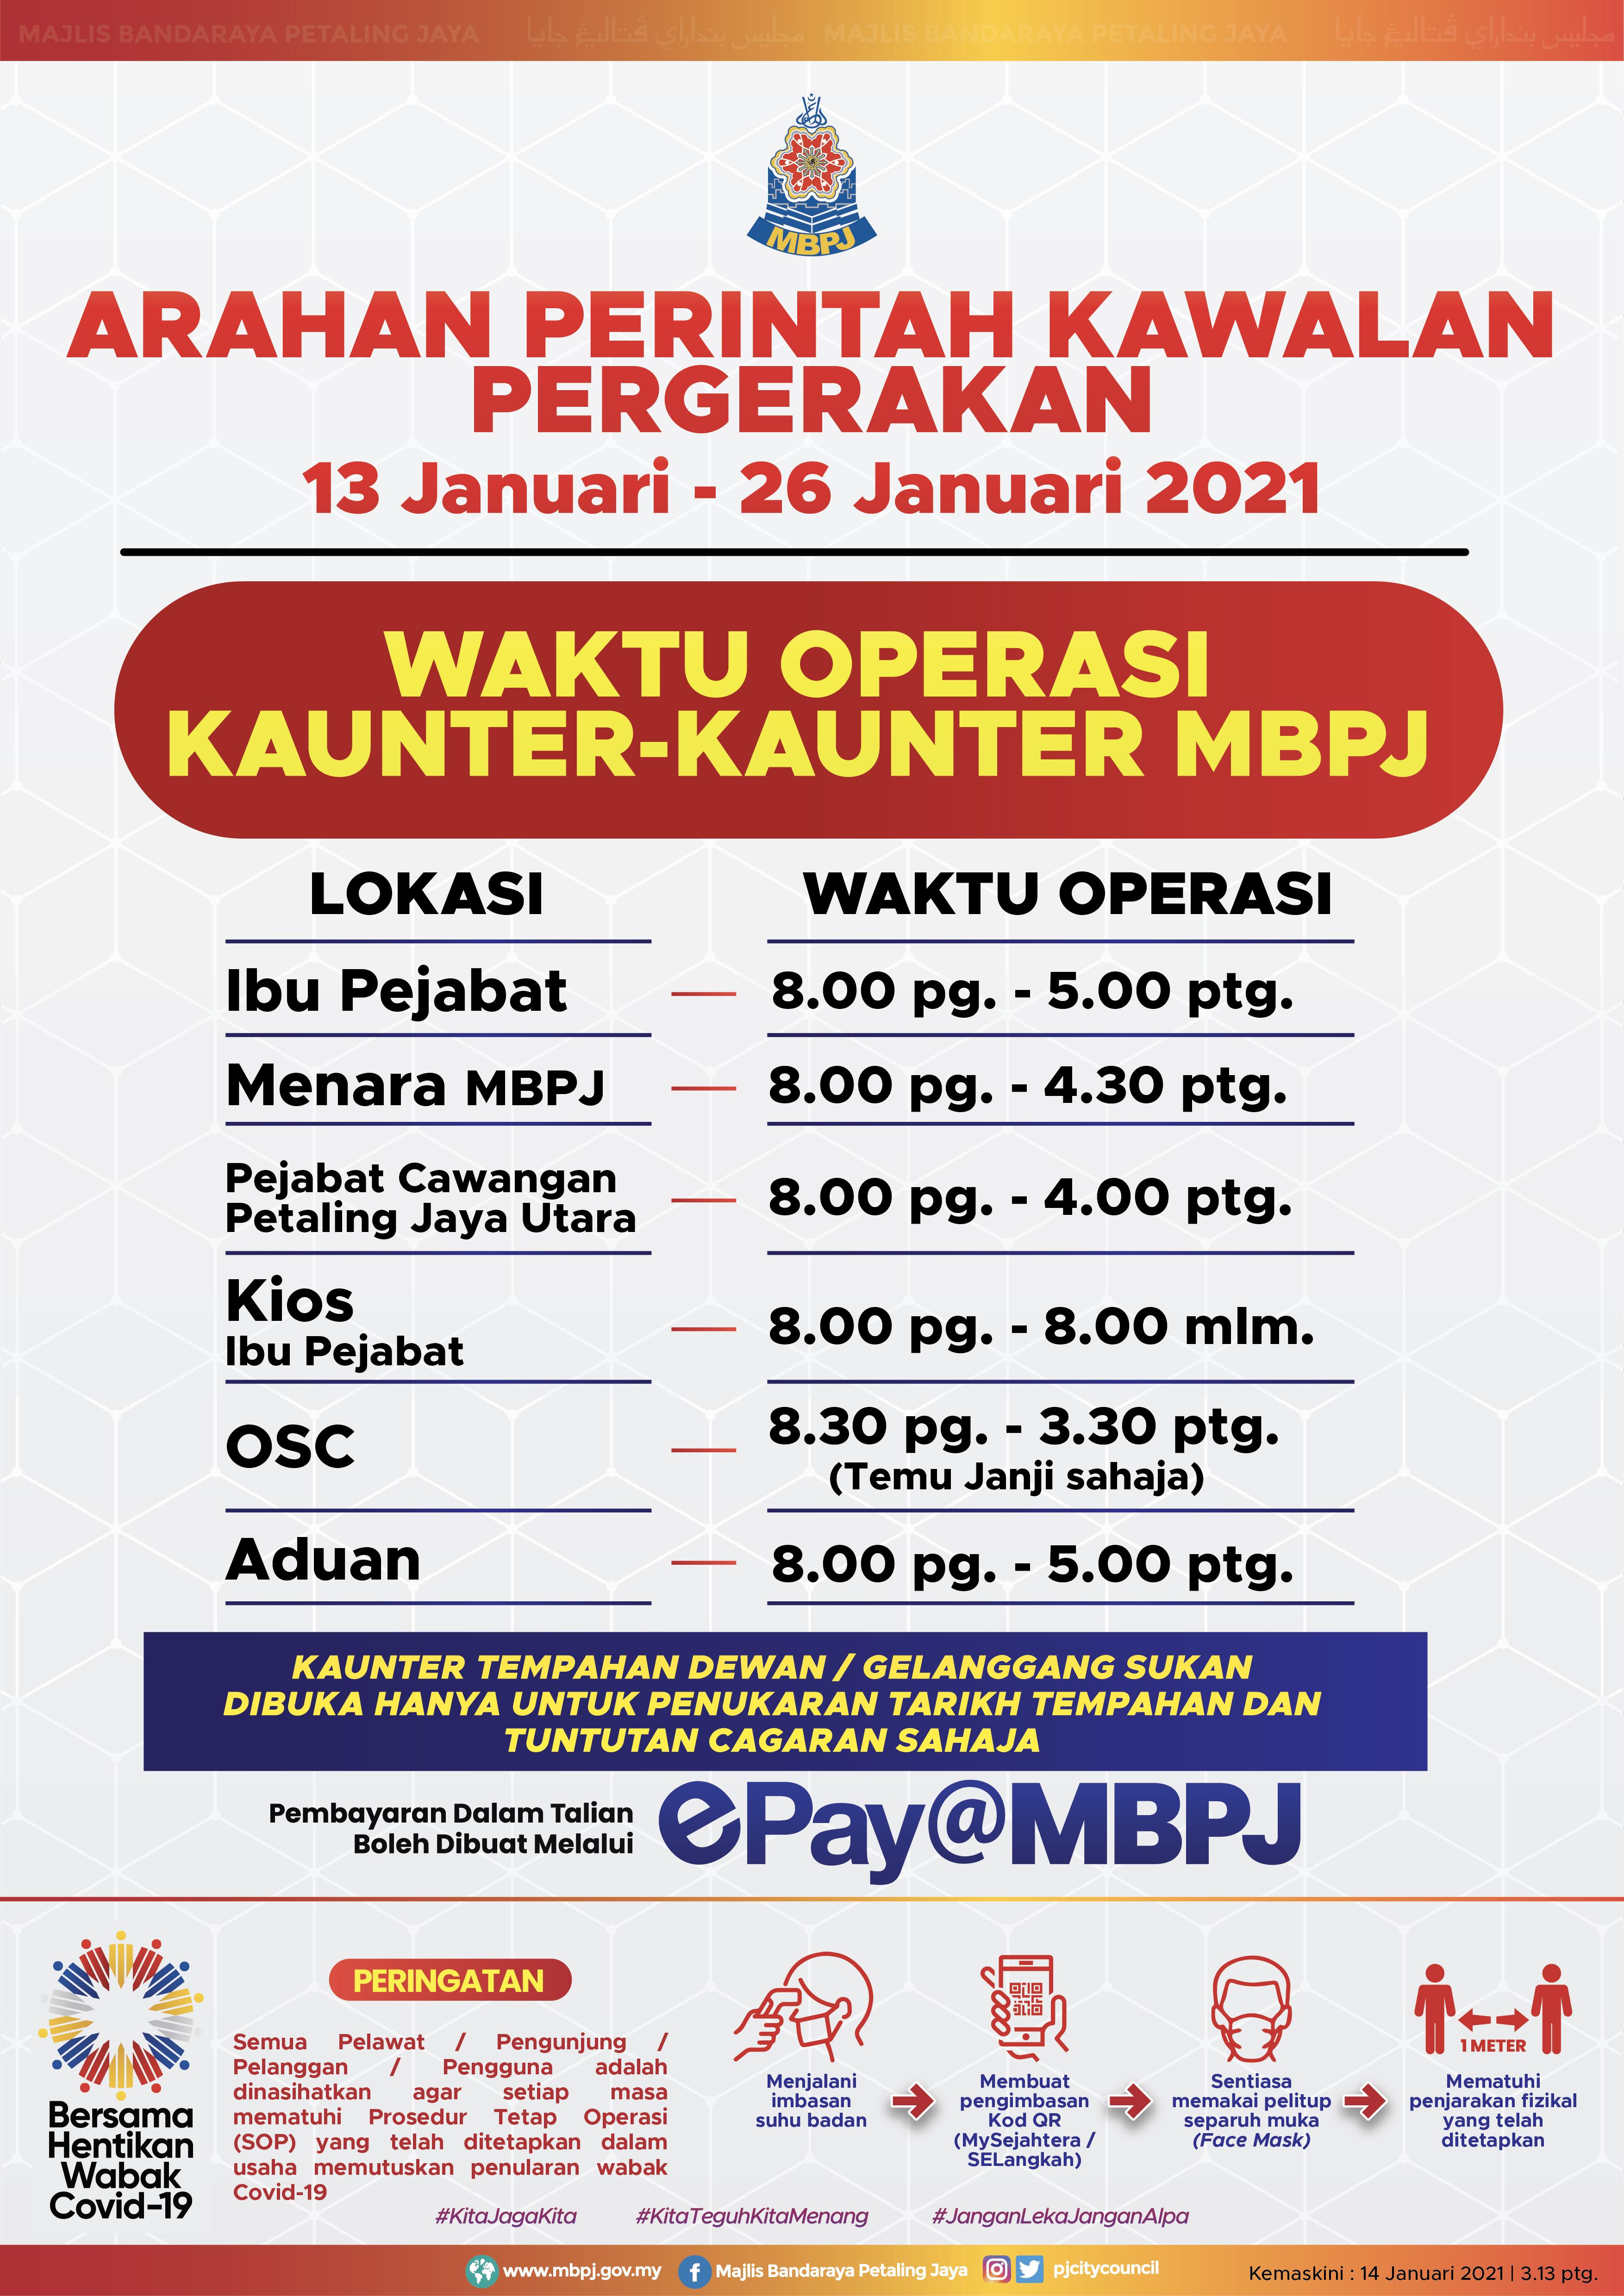 Mbpj parking operating hours